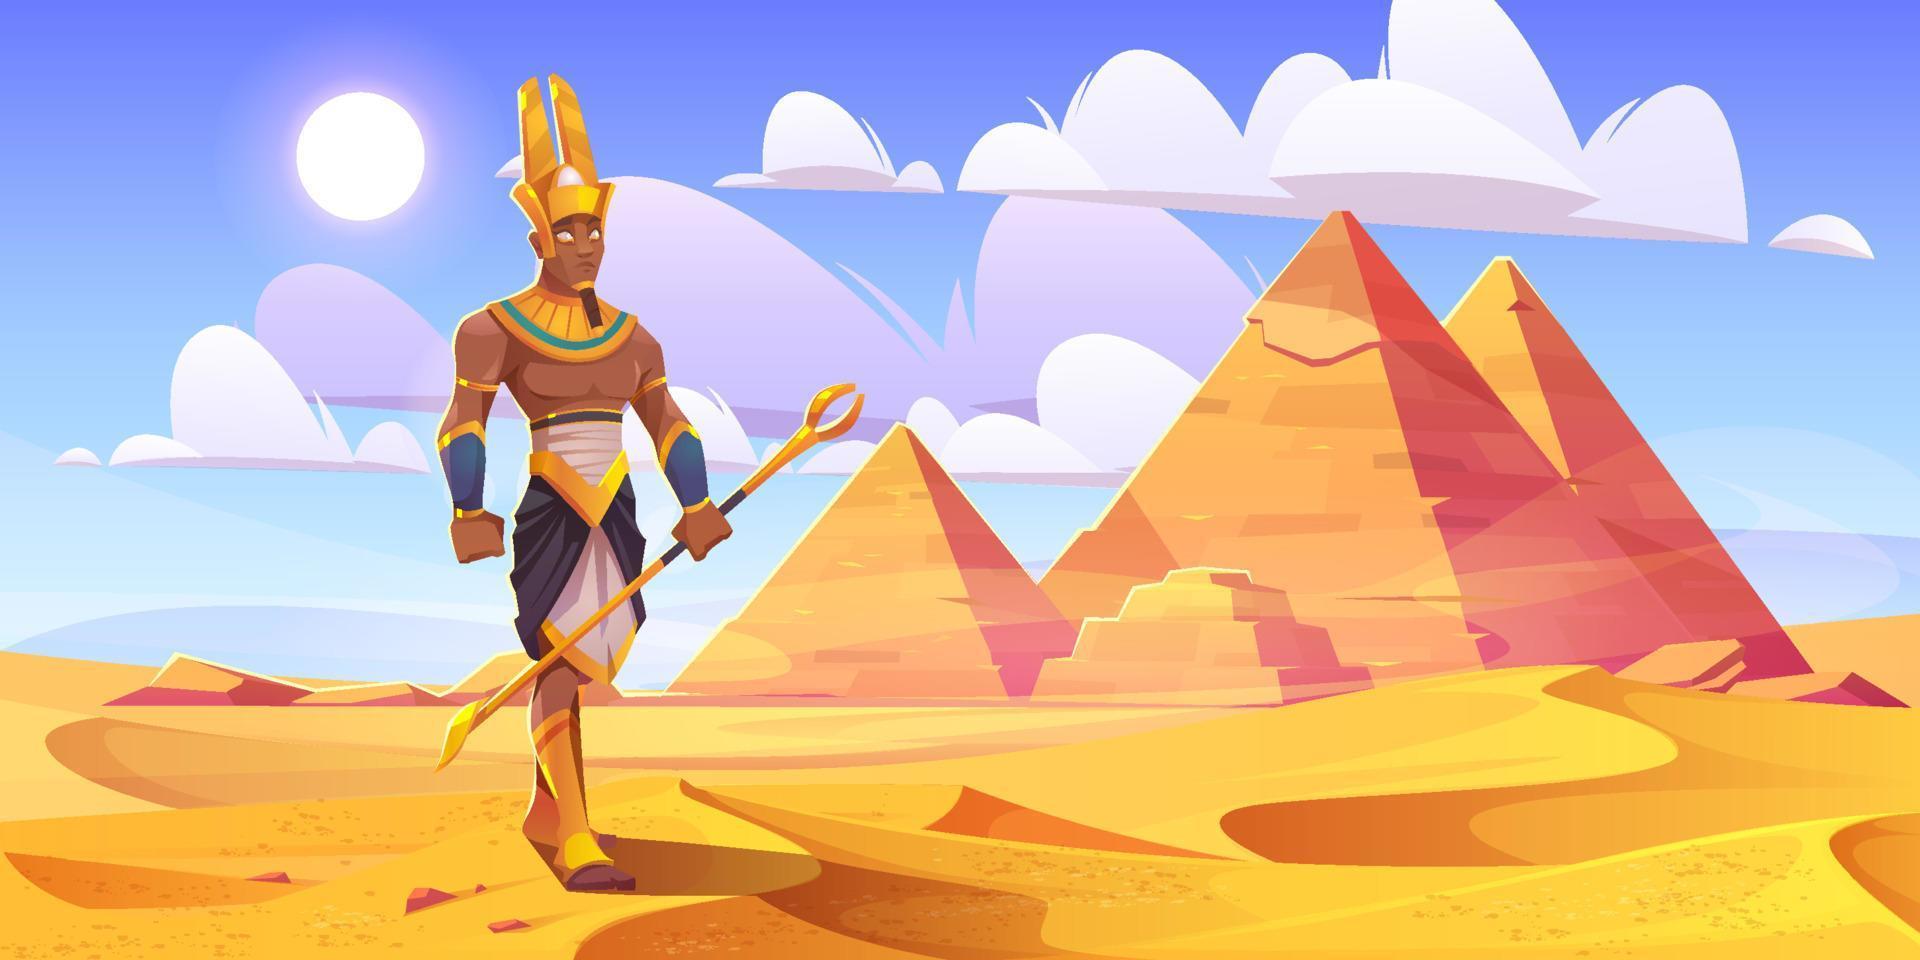 antigo deus egípcio amun no deserto com pirâmides vetor